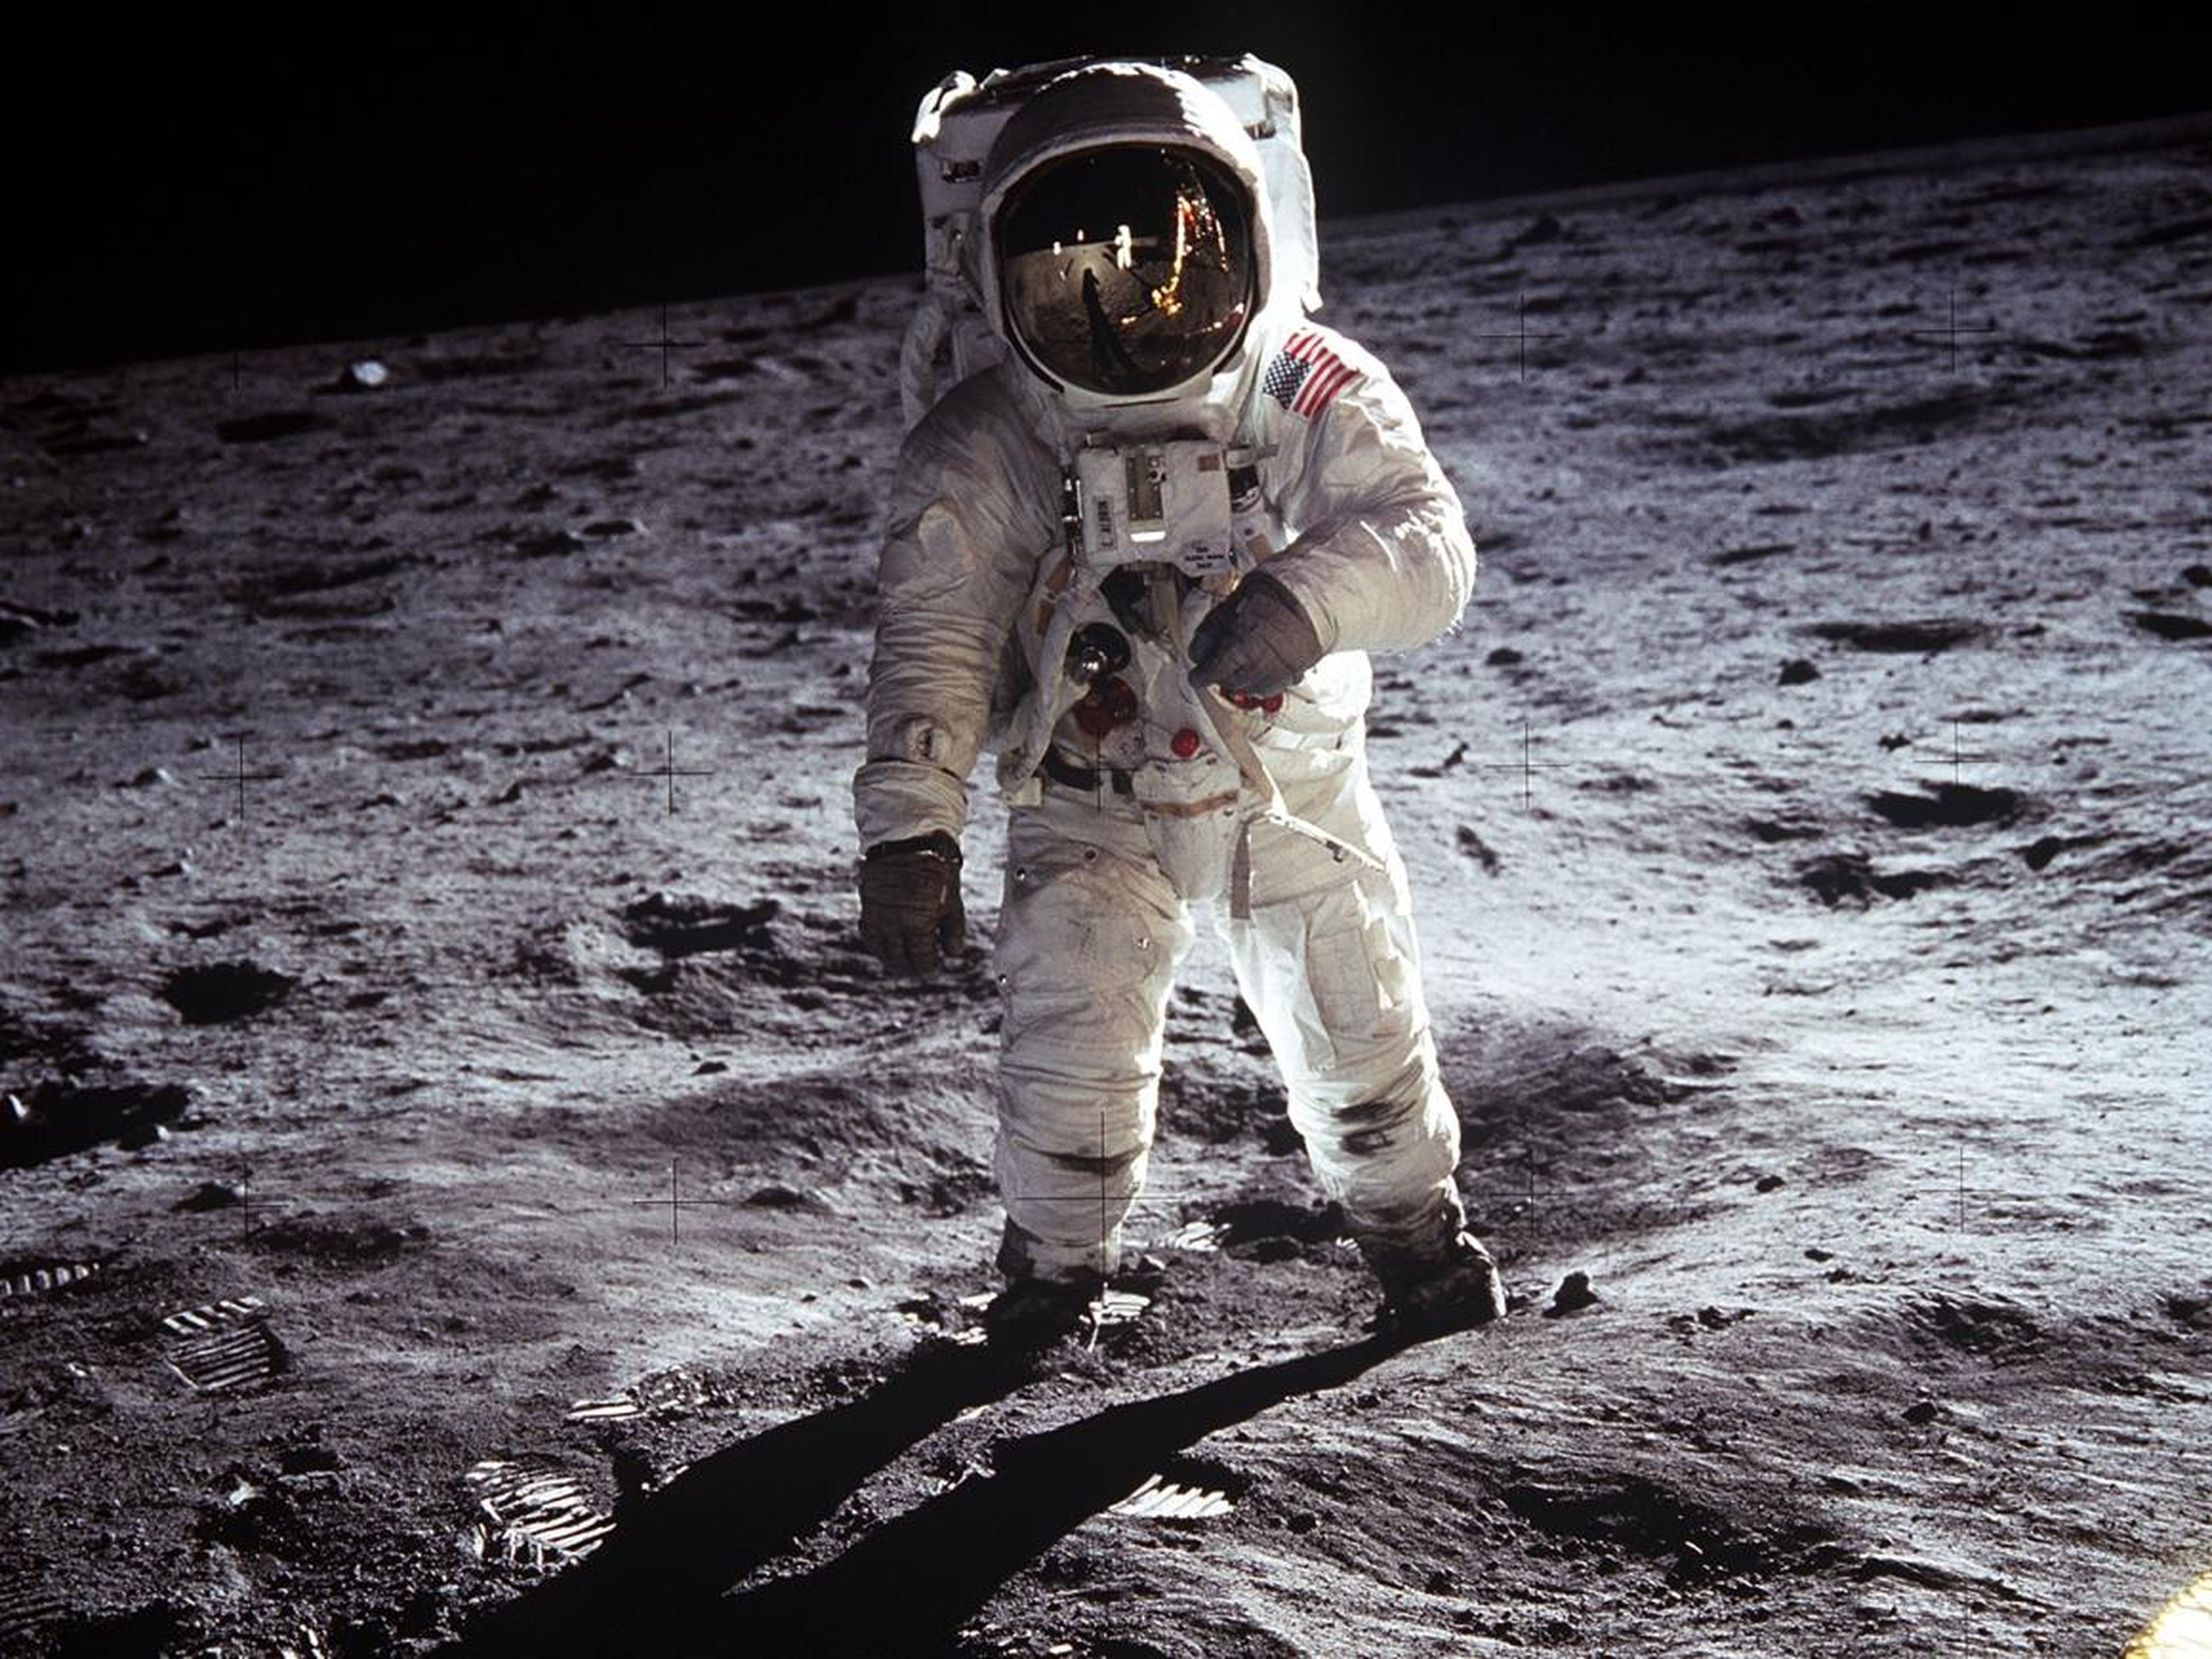 El astronauta Edwin E. Aldrin Jr. camina cerca del Módulo Lunar durante la actividad extravehicular del Apolo 11 el 20 de julio de 1969 en la Luna